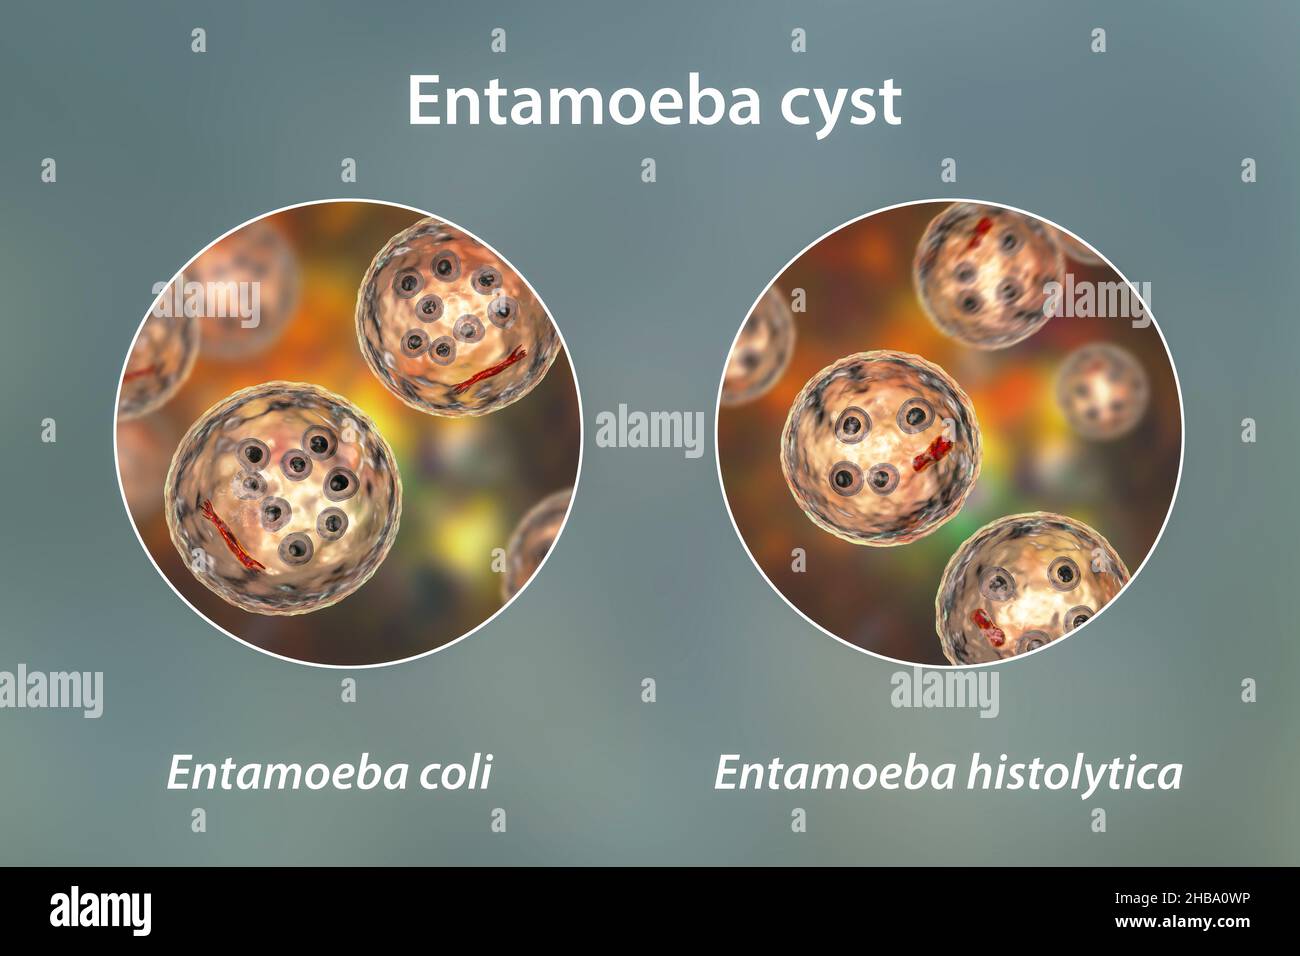 Cisti di Entamoeba protozoi, E. coli ed E. histolityca, illustrazione al computer. E. coli è un'ameba non patogena, la sua cisti è di 15-25 micrometri, ha otto nuclei e barra cromatoidale allungata con estremità schegge (rosso scuro). L'istolitica è un protozoano parassita che causa dissenteria amebica nell'uomo dopo l'ingestione di cisti infettivi in cibo o acqua contaminati. La cisti matura di E. istolitica è di 10-20 micrometri, ha quattro nuclei e barra cromatoidale allungata arrotondata (rosso scuro). Foto Stock